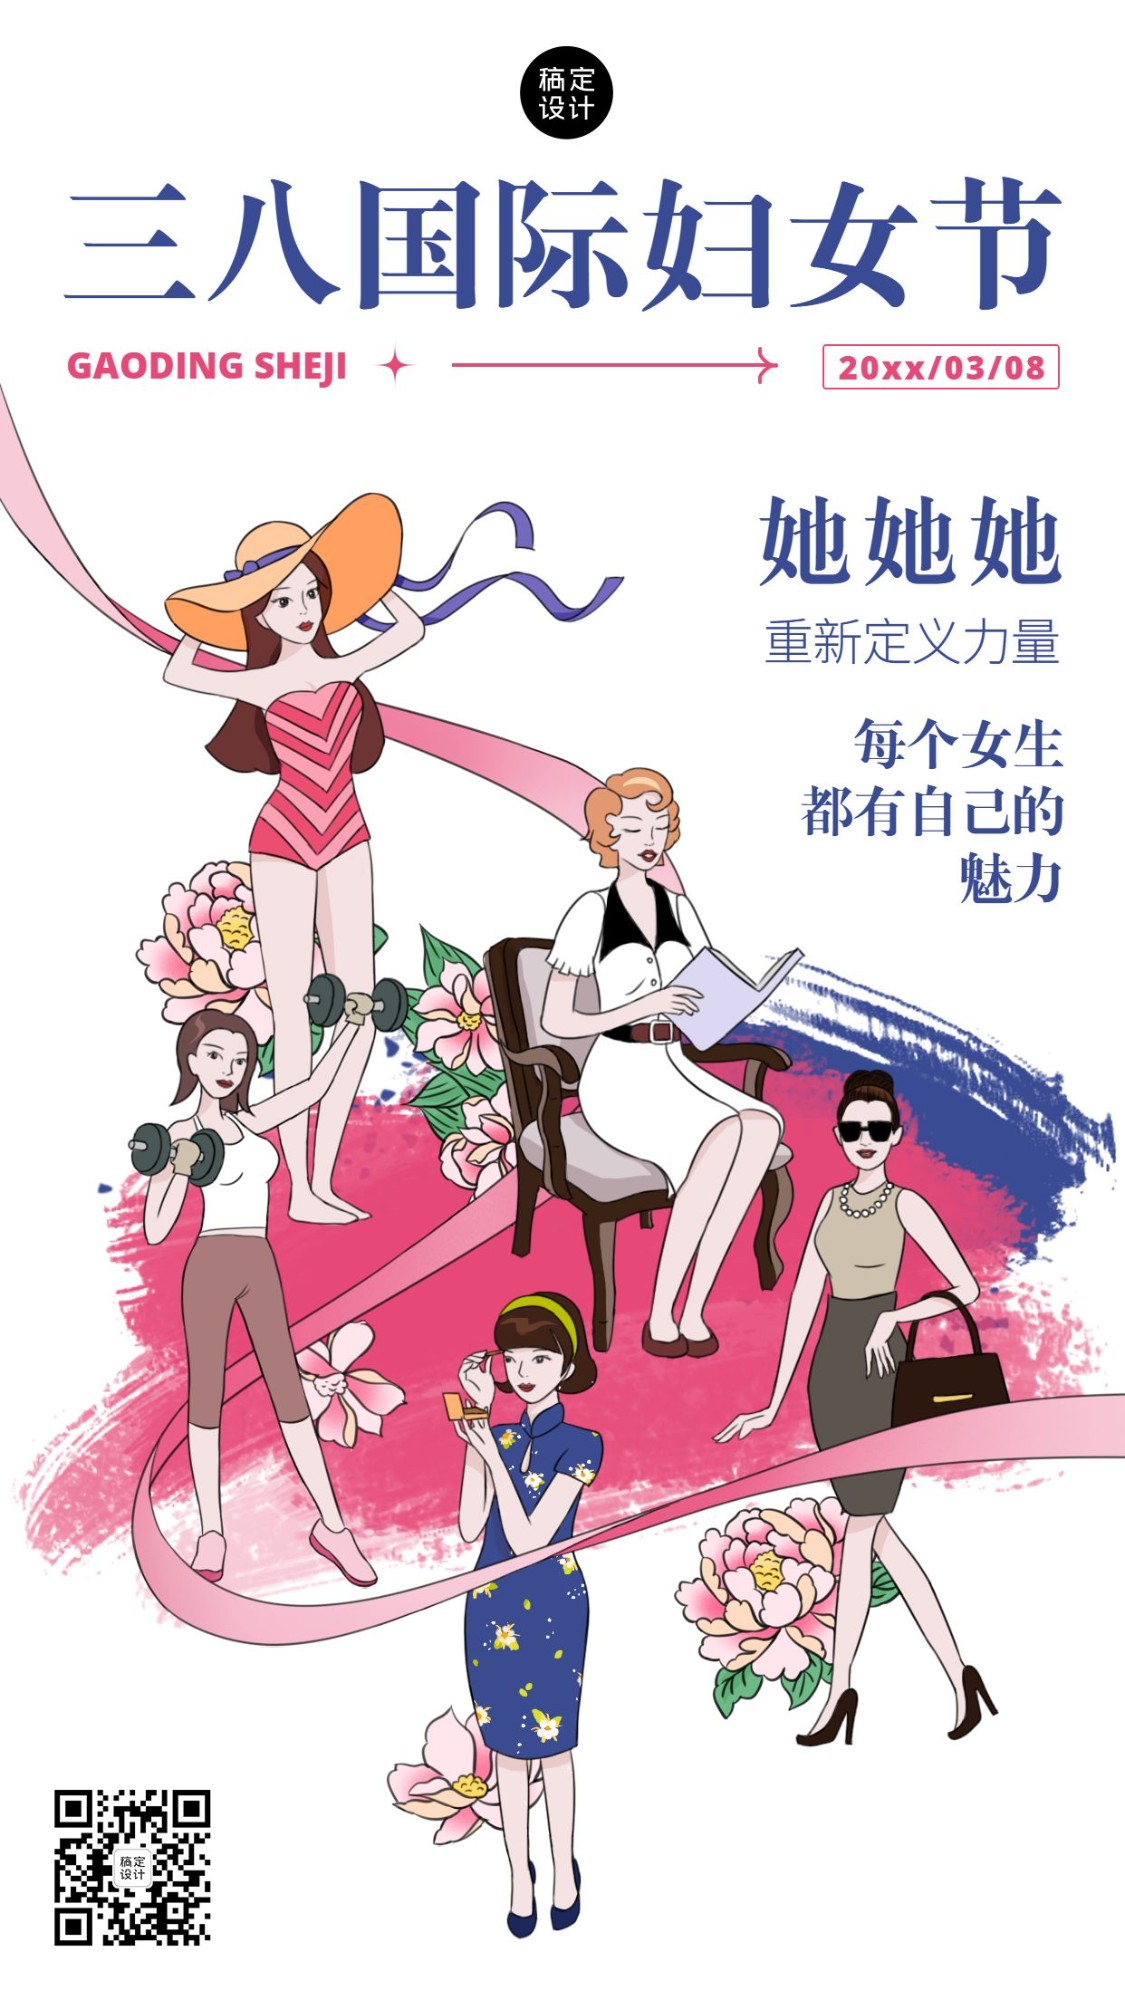 妇女节节日祝福插画手机海报预览效果